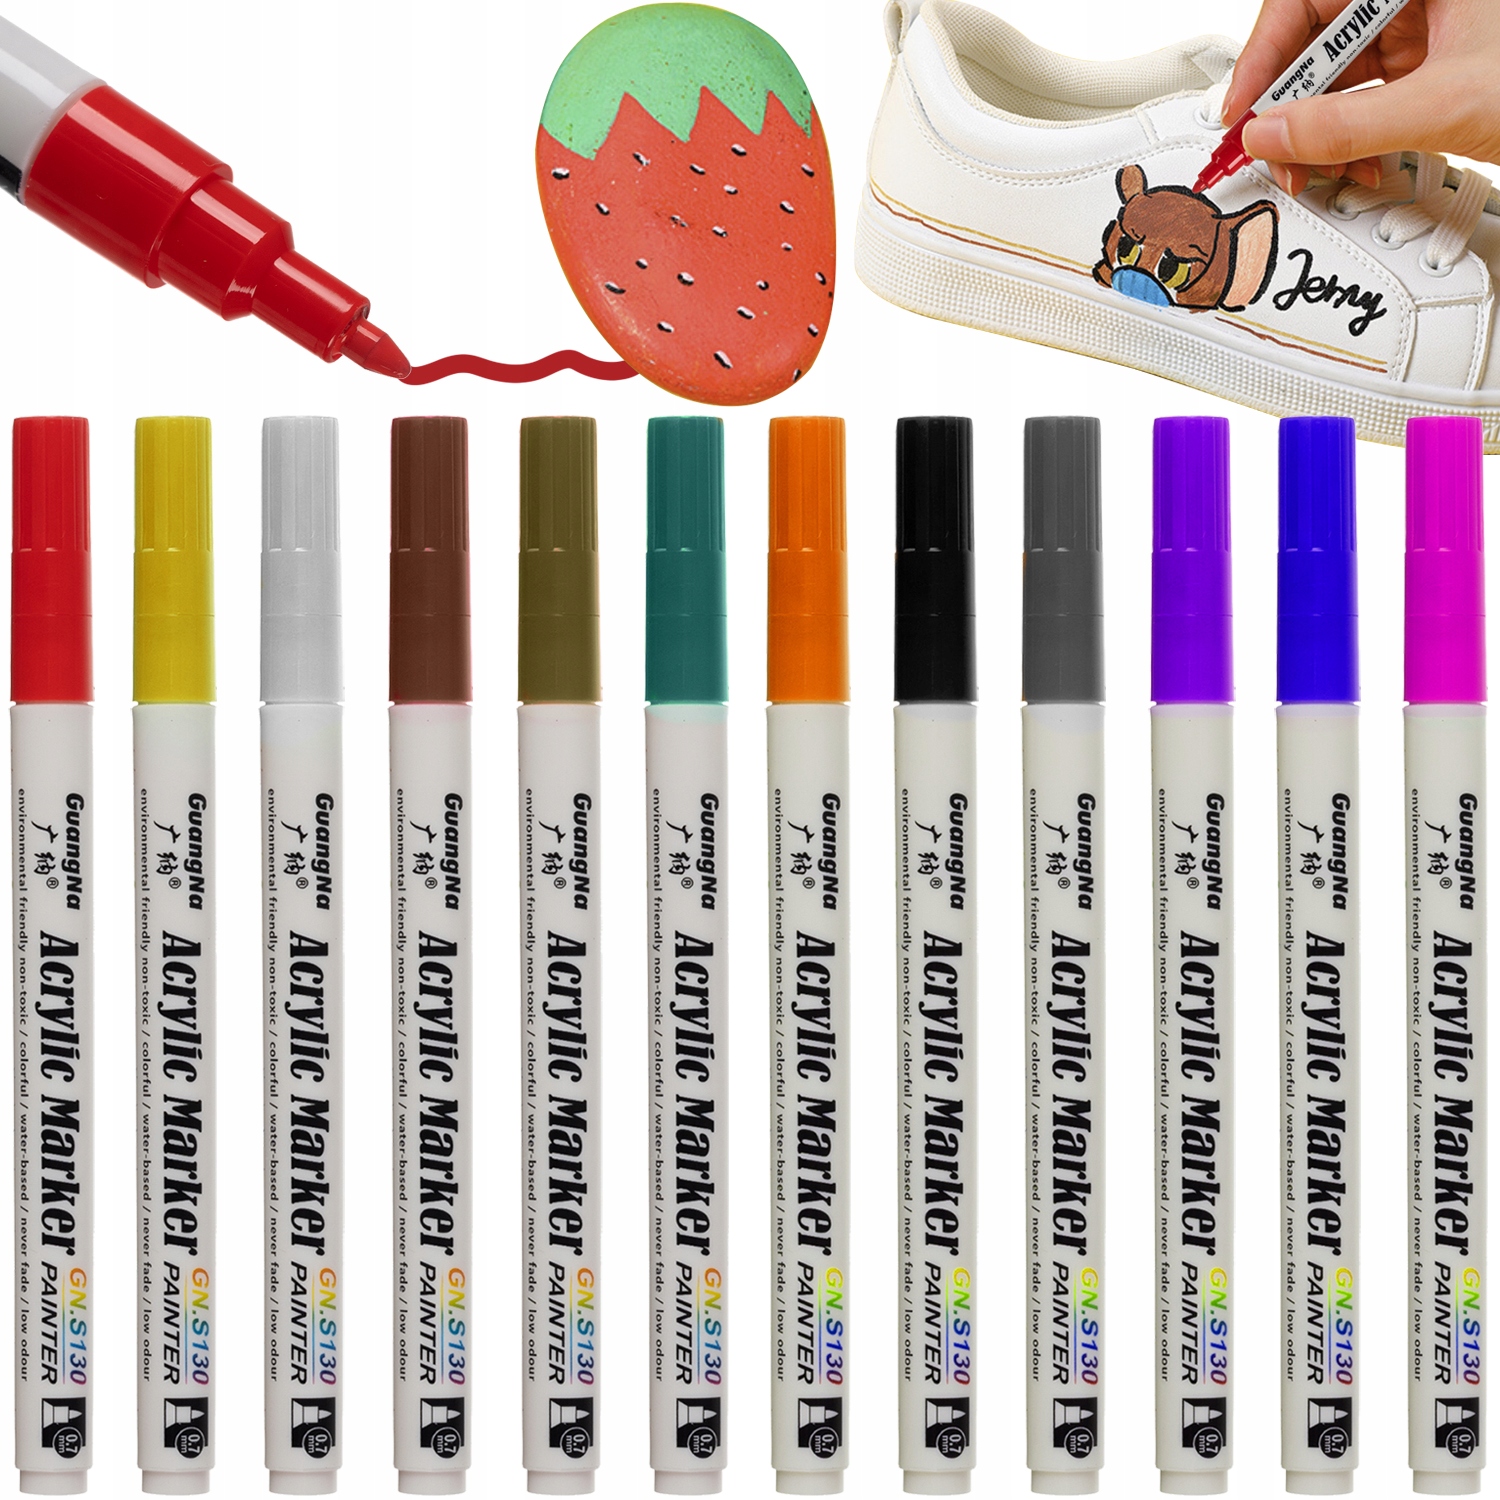 Pisatky Akrylové značkovače FLAMASTRY mazačky sada 12 ks 0.7mm farby